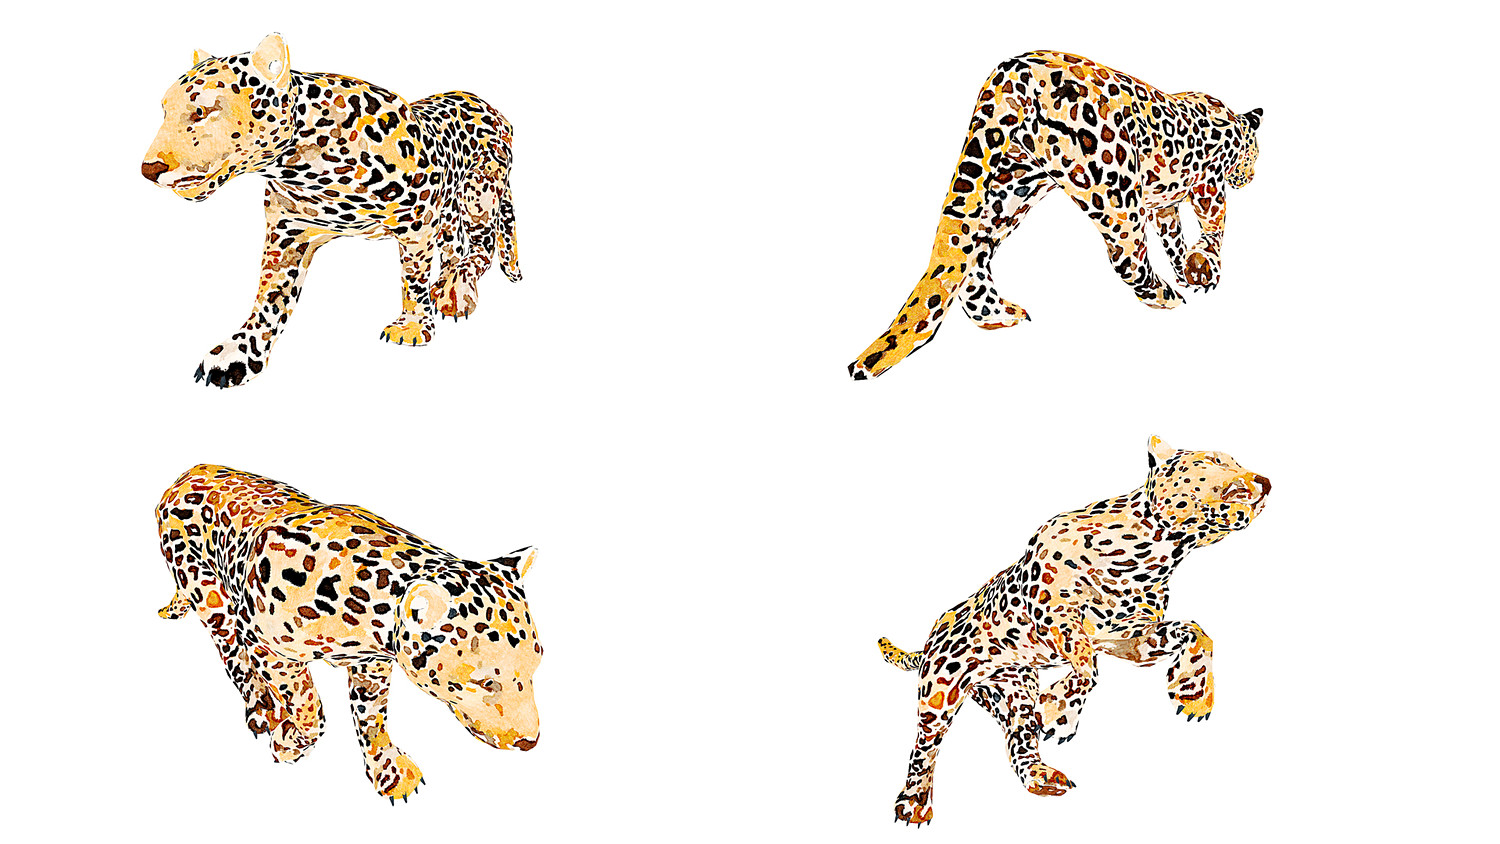 مدل سه بعدی حیوانات آفریقایی انیمیت شده - 8